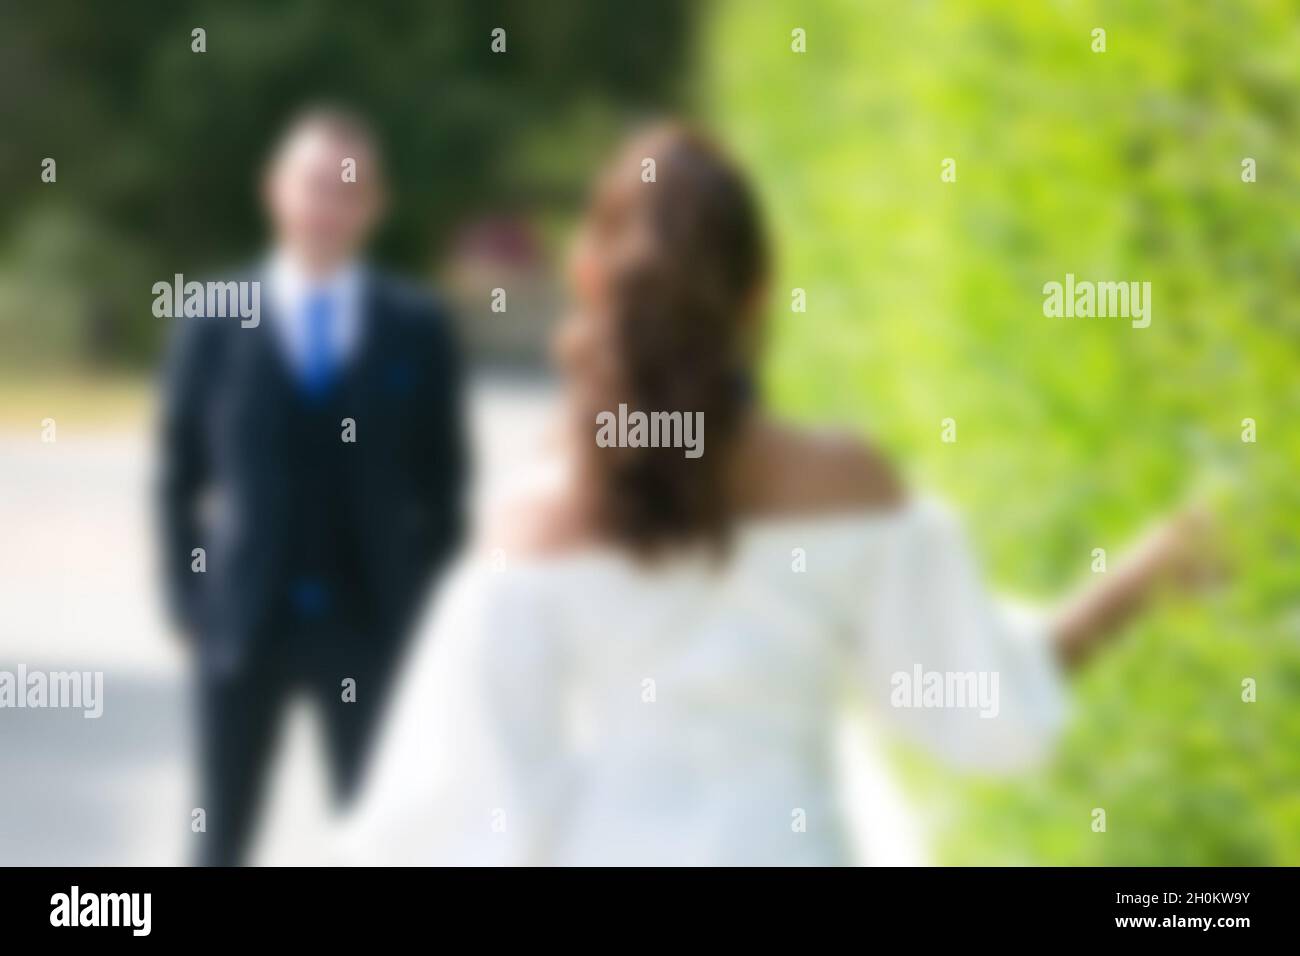 Der Bräutigam in einer strengen Jacke wartet auf seine Braut, die ihm entlang der grünen Büsche entgegengeht. Kein Fokus, verschwommen, Stockfoto